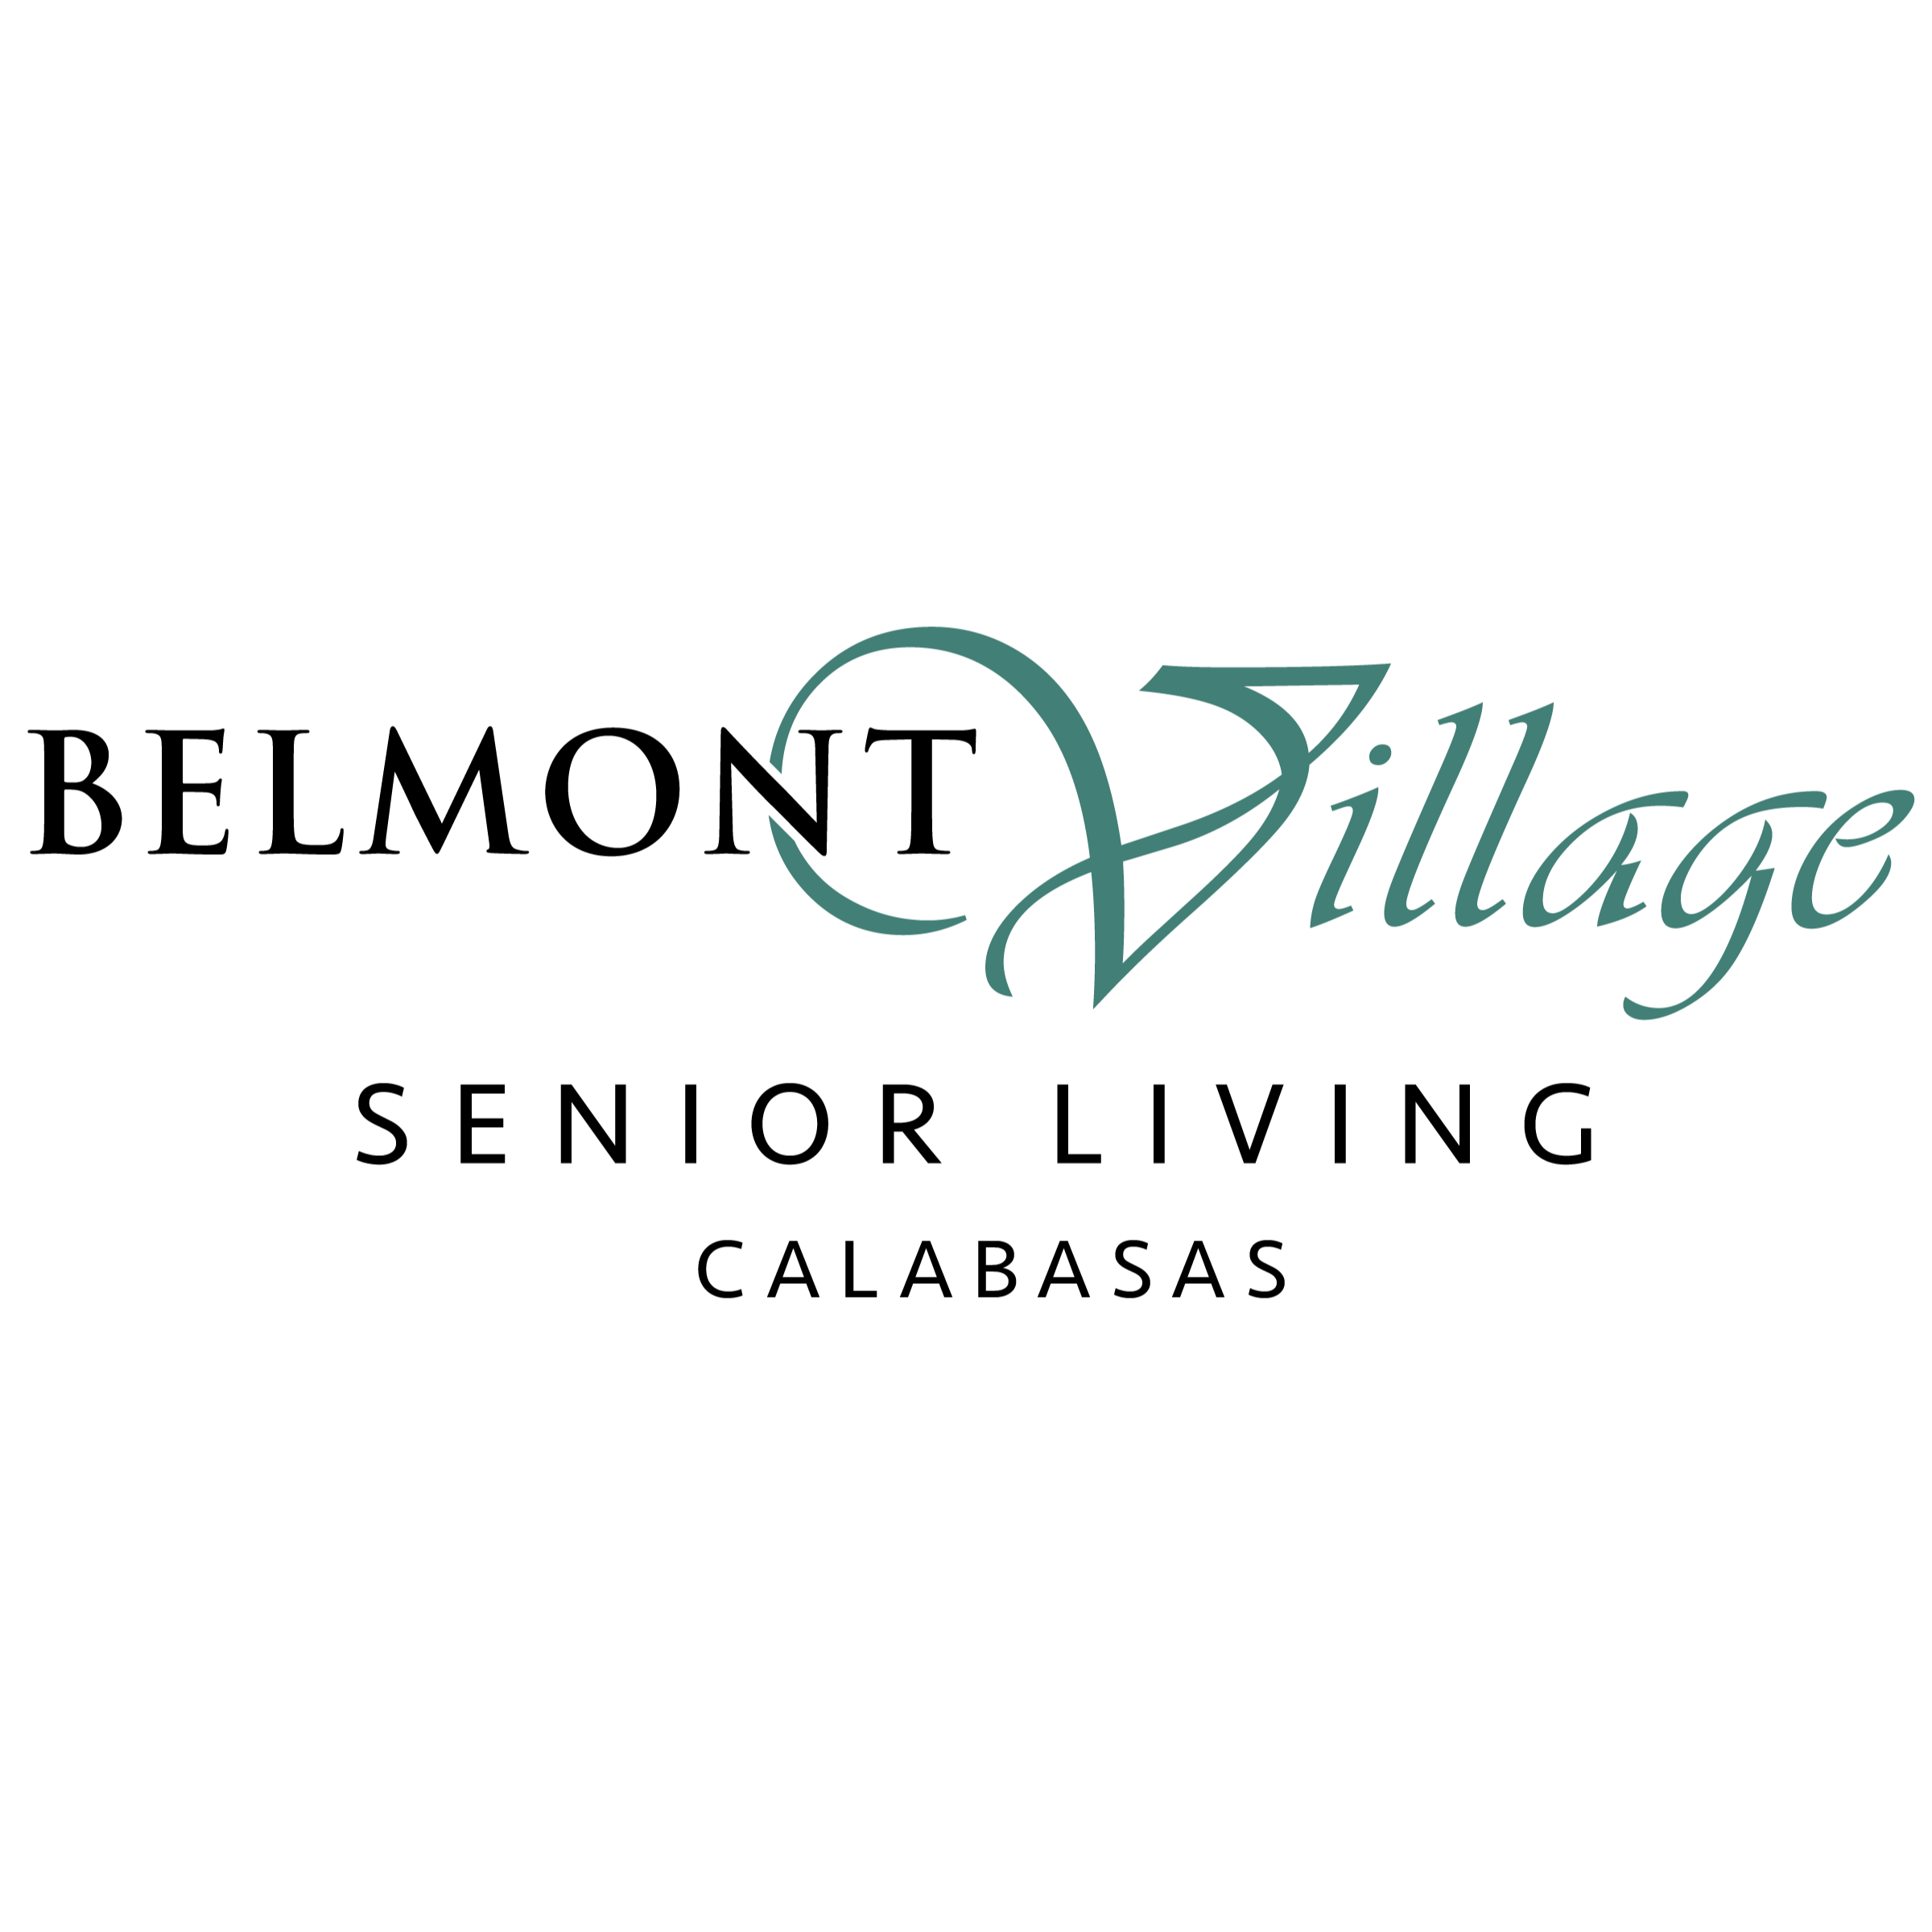 Belmont Village Senior Living Calabasas